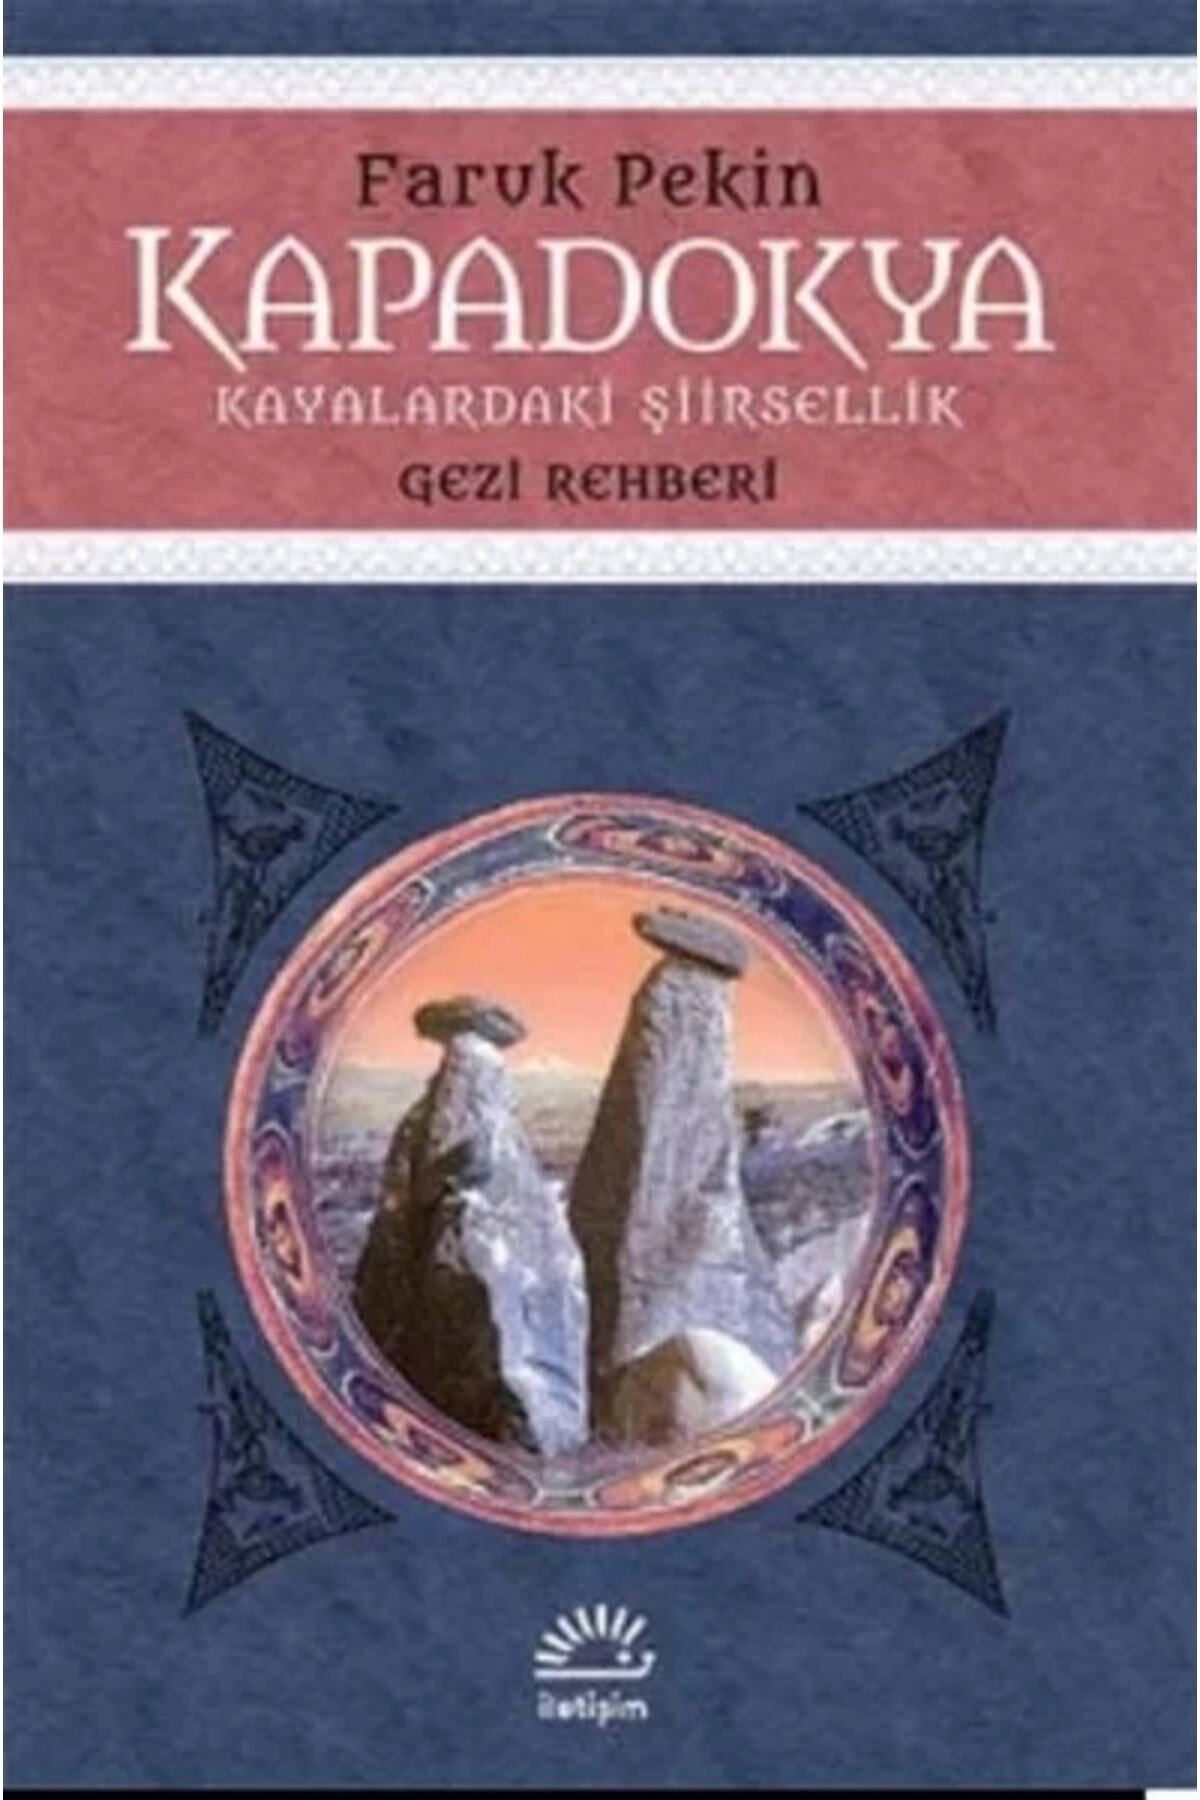 İletişim Yayınları Kapadokya: Kayalardaki Şiirsellik, Gezi Rehberi - - Faruk Pekin Kitabı